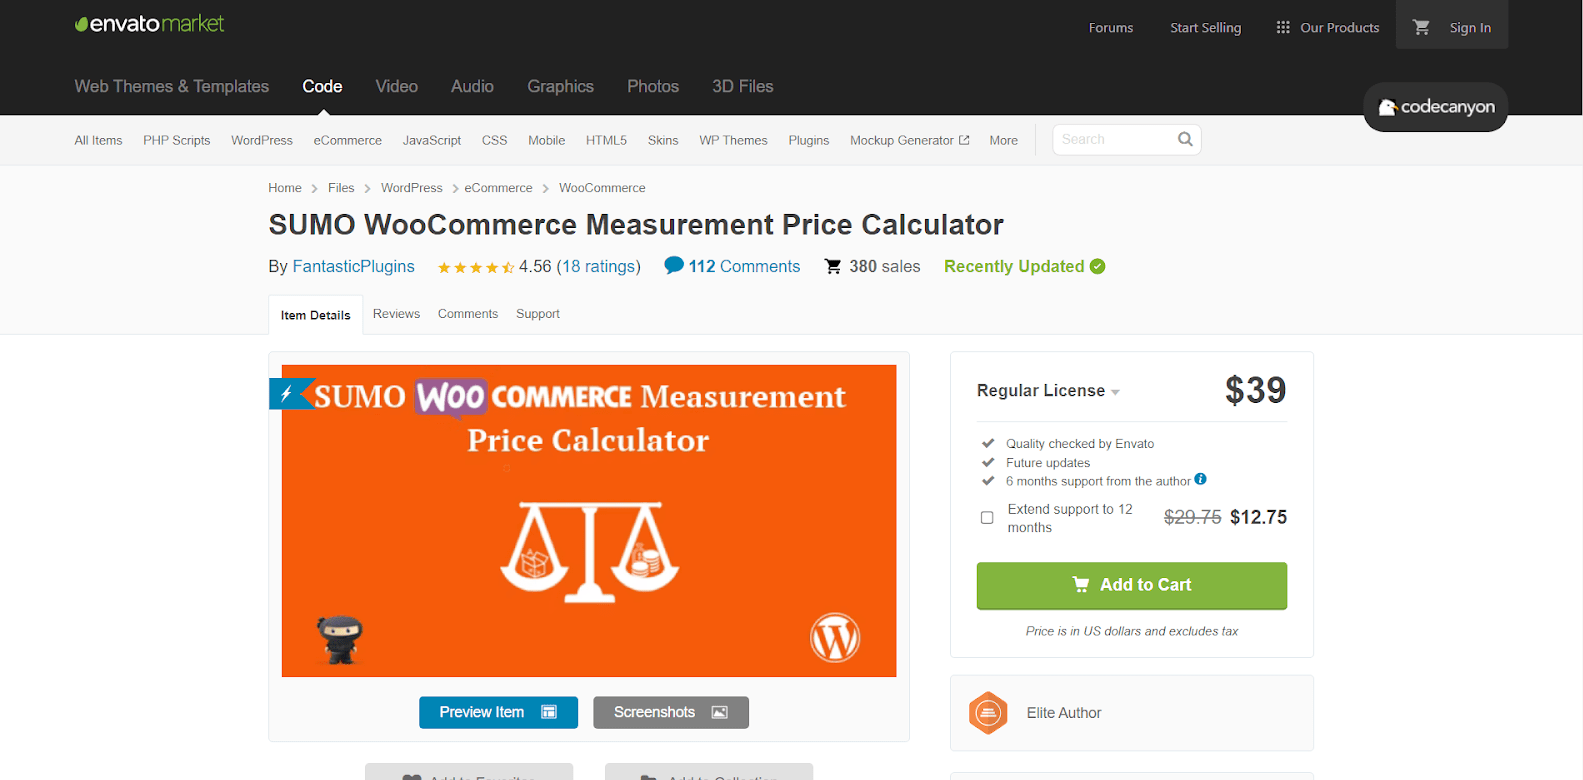 Sumo WooCommerce Measurement Price Calculator